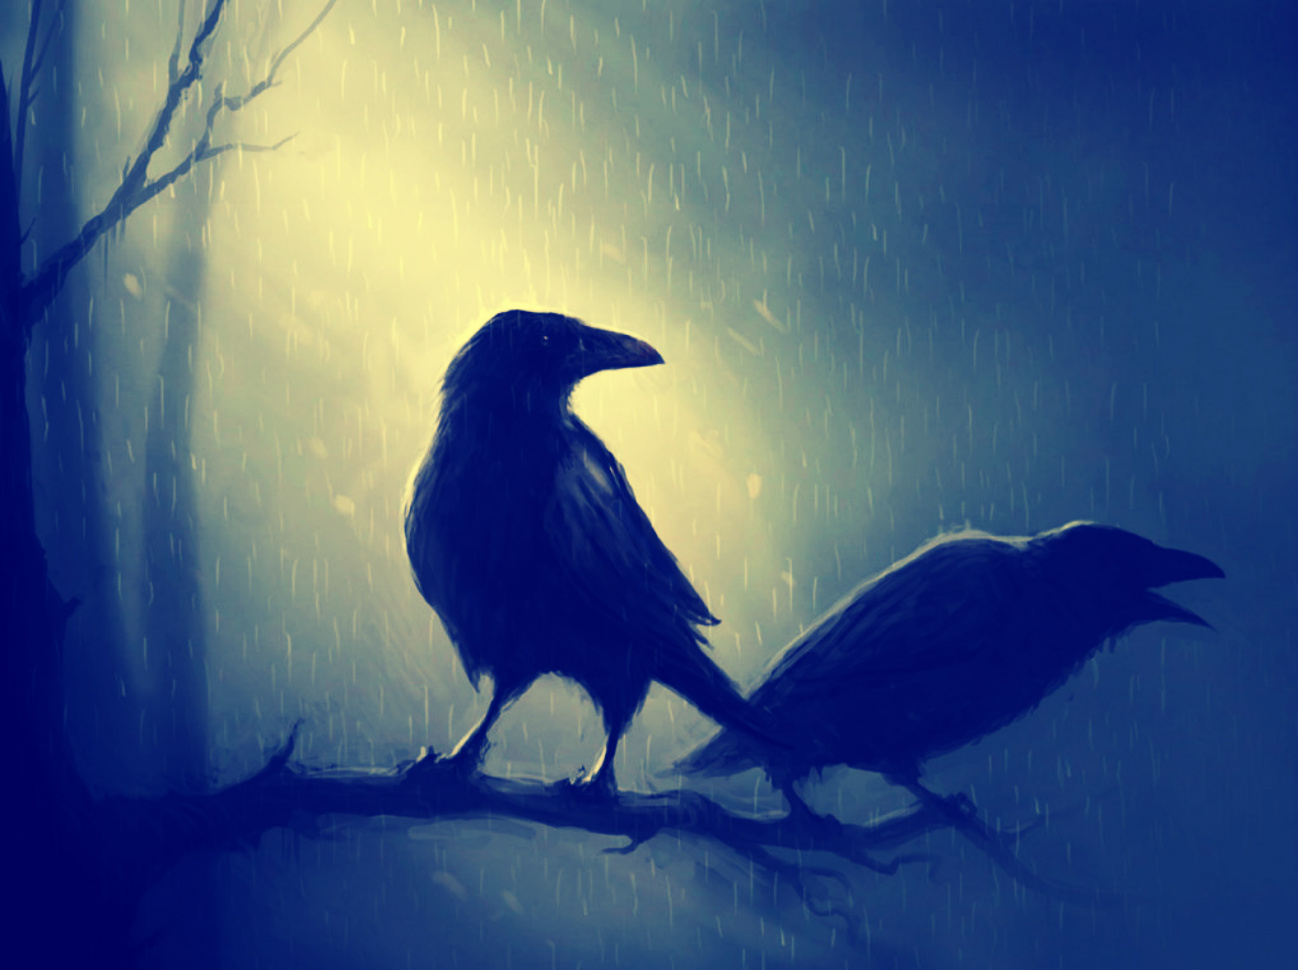 Dark Crows by step.o.metal